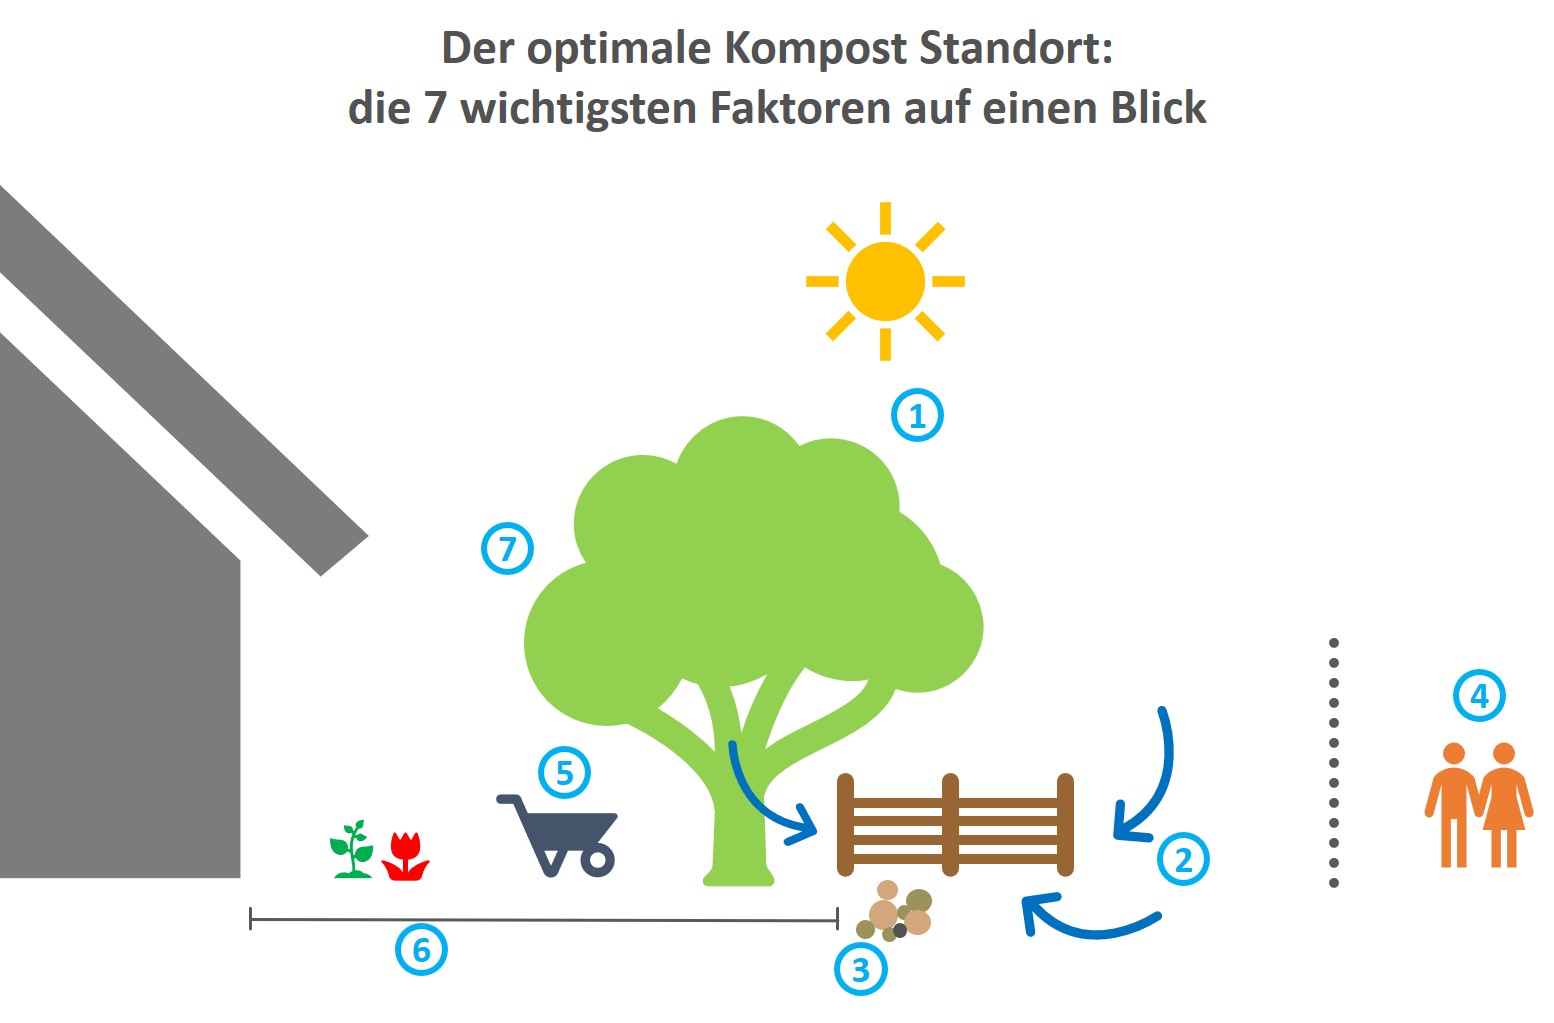 Der optimale Kompost Standort - die 7 wichtigsten Faktoren auf einen Blick